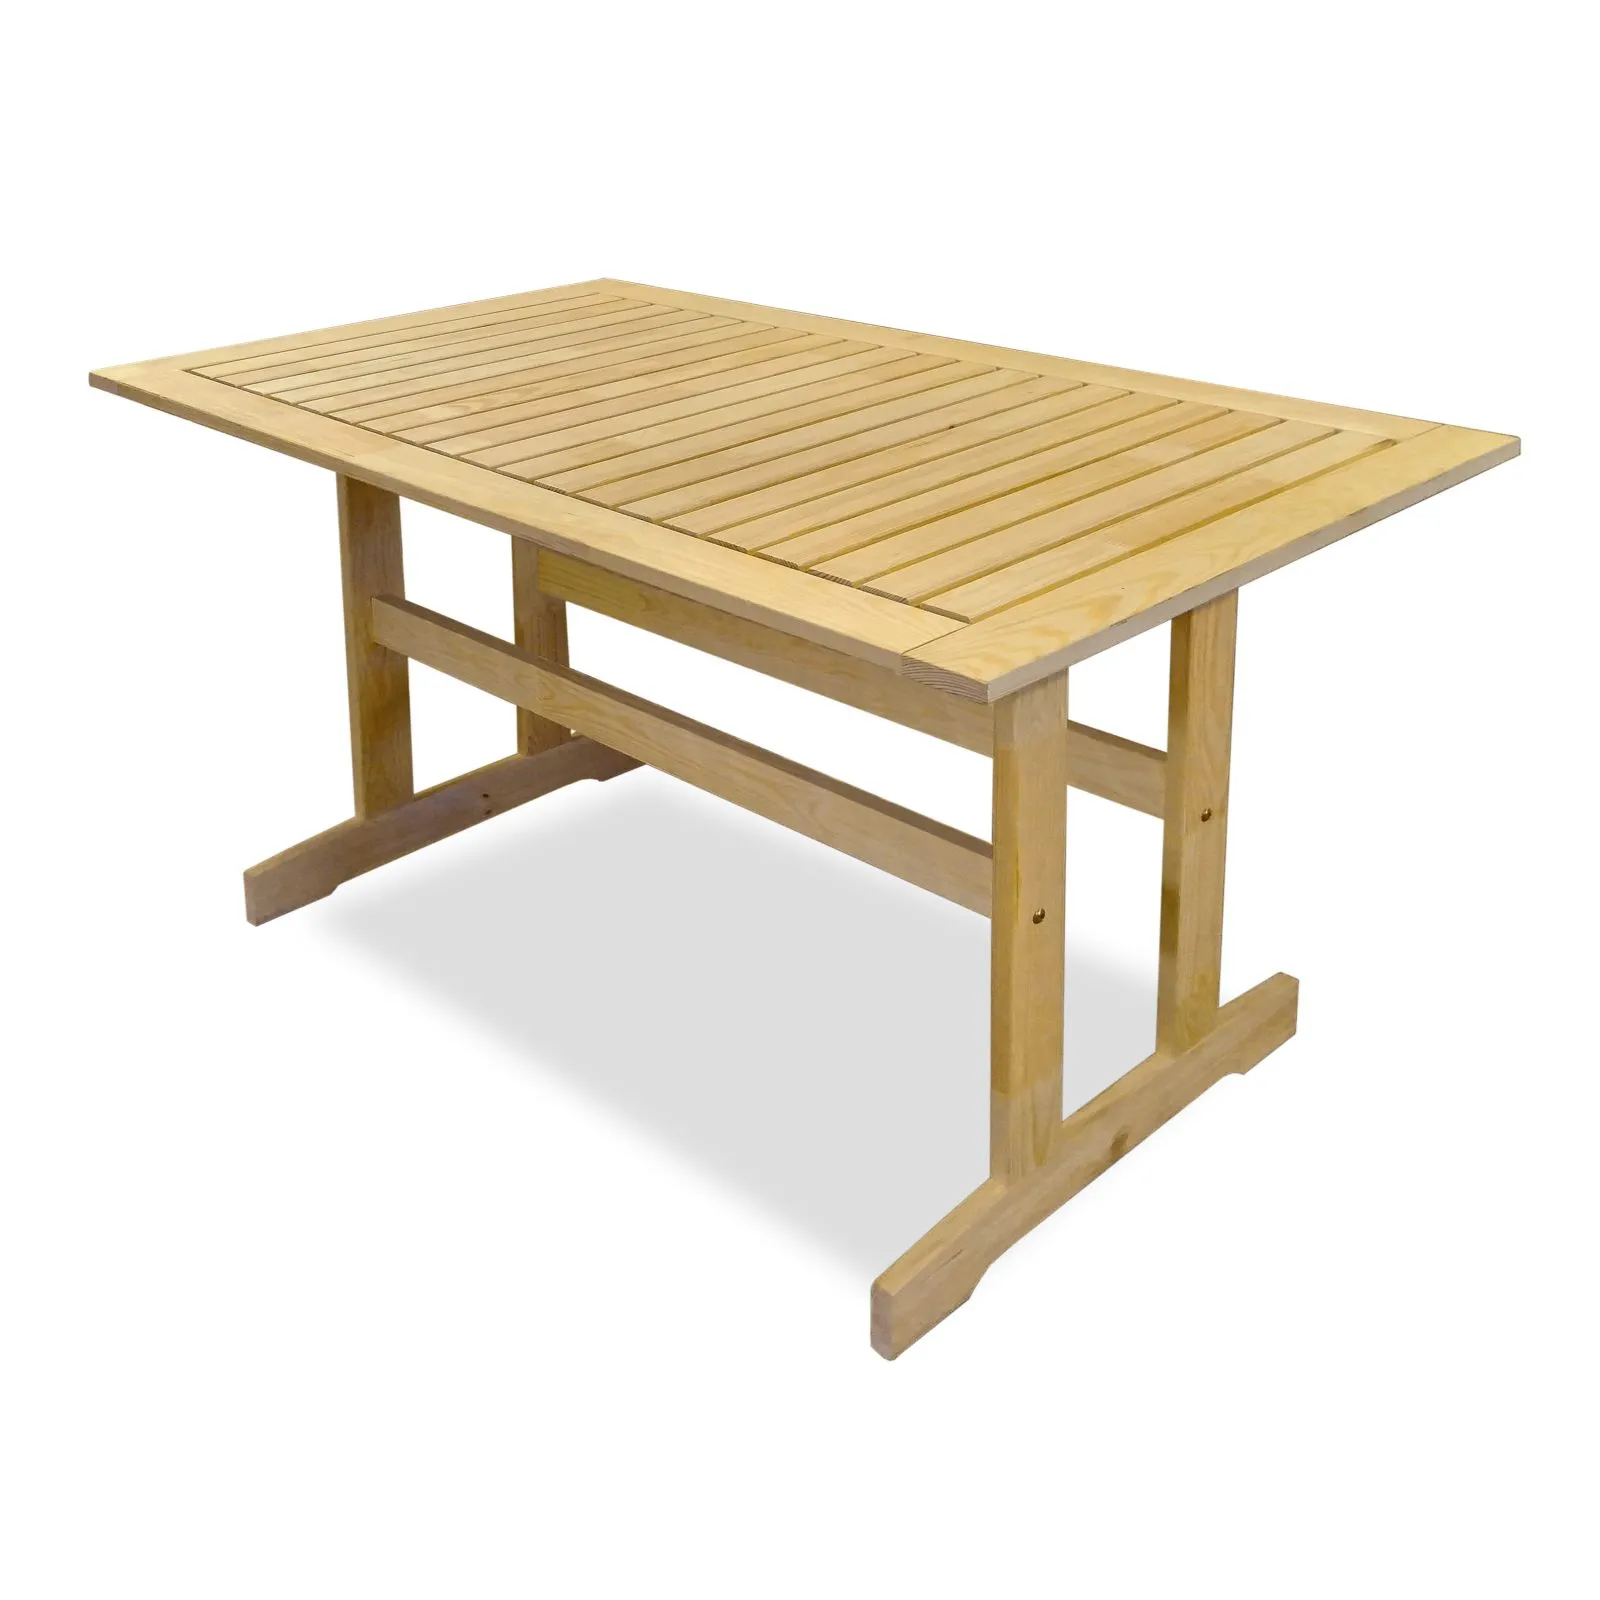 Комплект мебели деревянный Стэнхамн